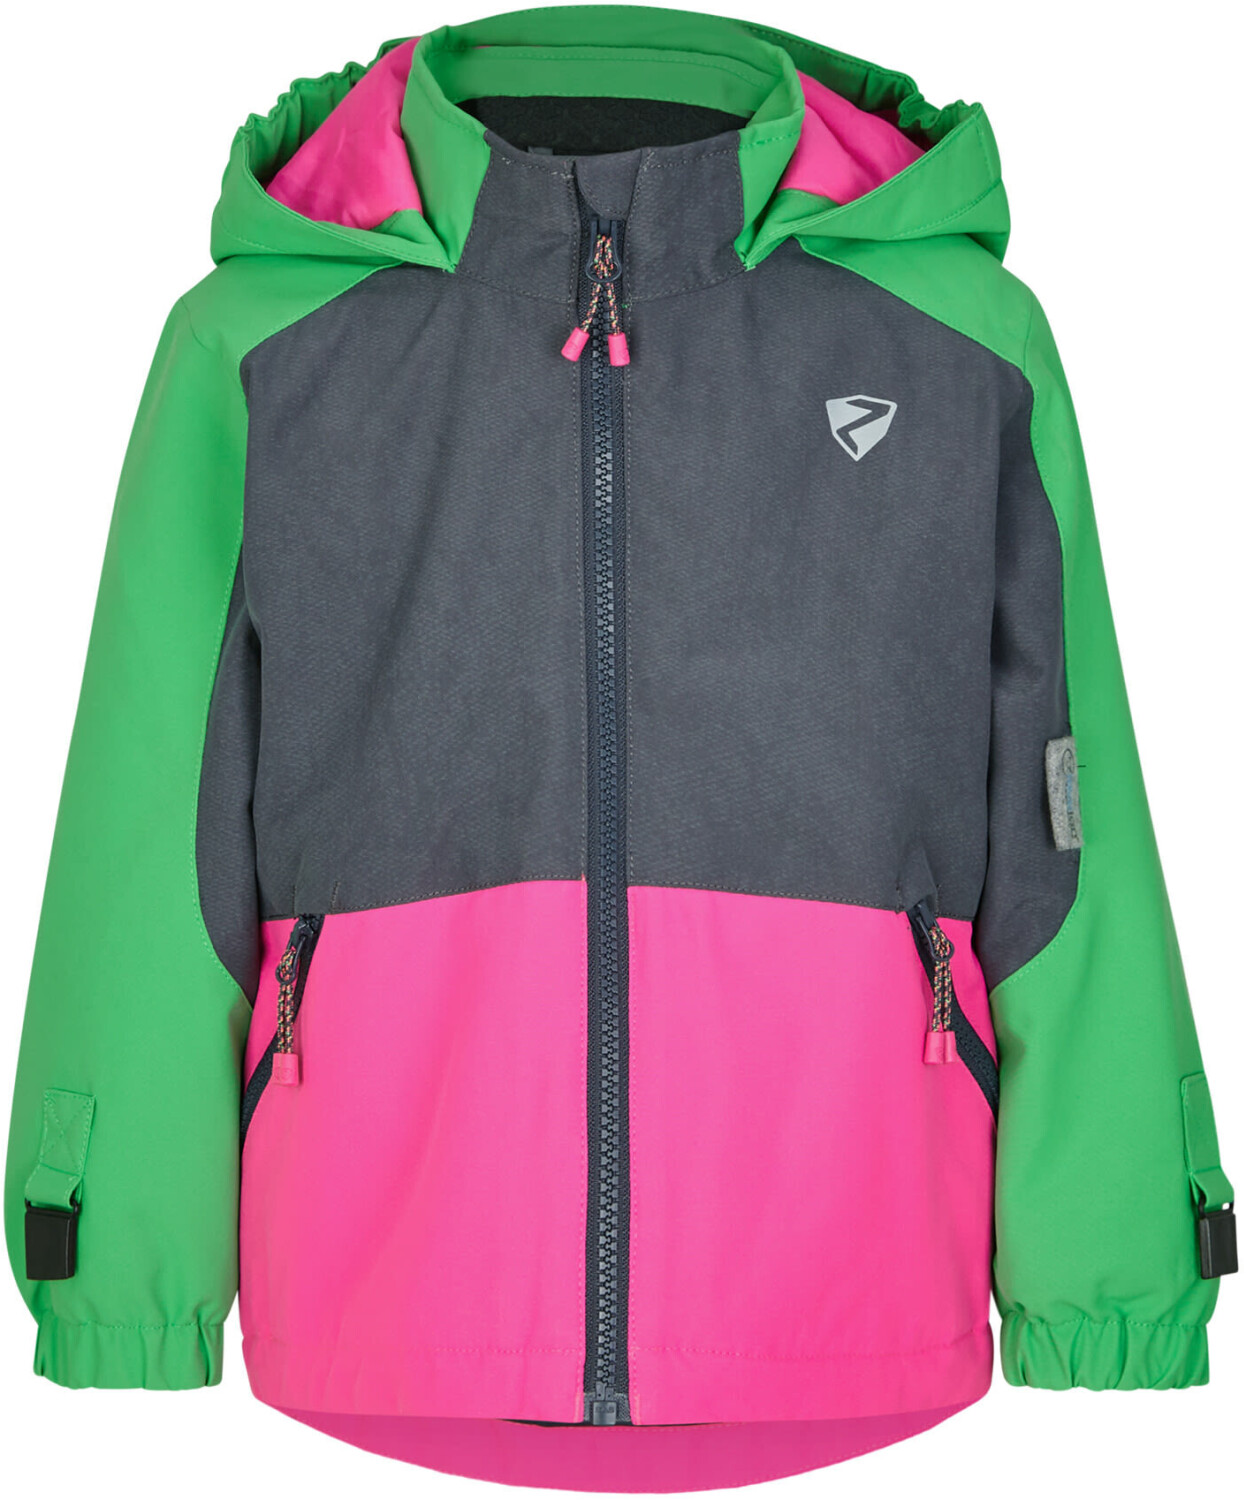 Ziener Amely Ski-Jacket irish green ab 39,99 € | Preisvergleich bei